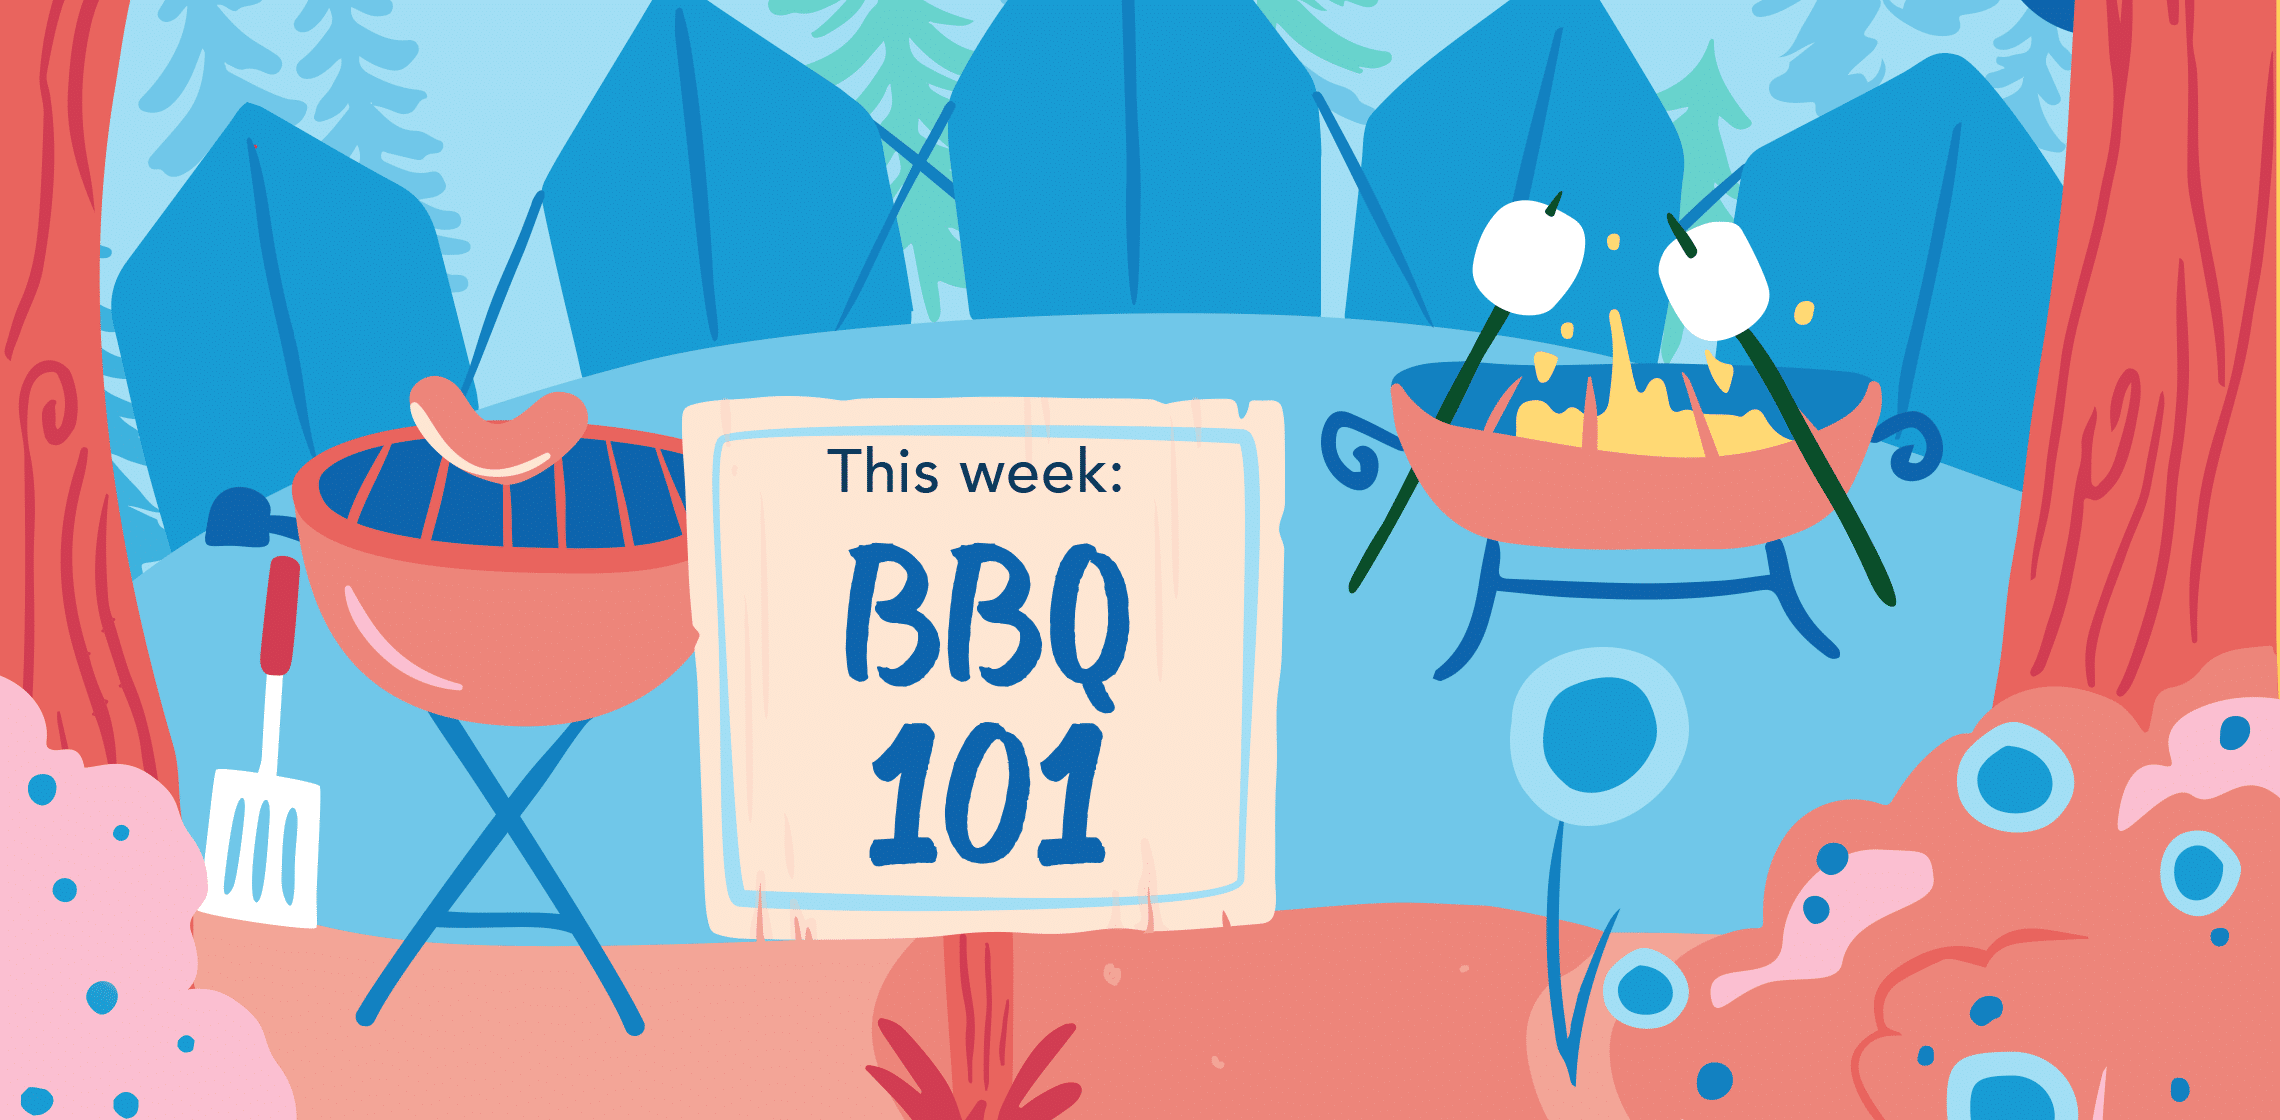 Camp Shopkick: Barbecue Week